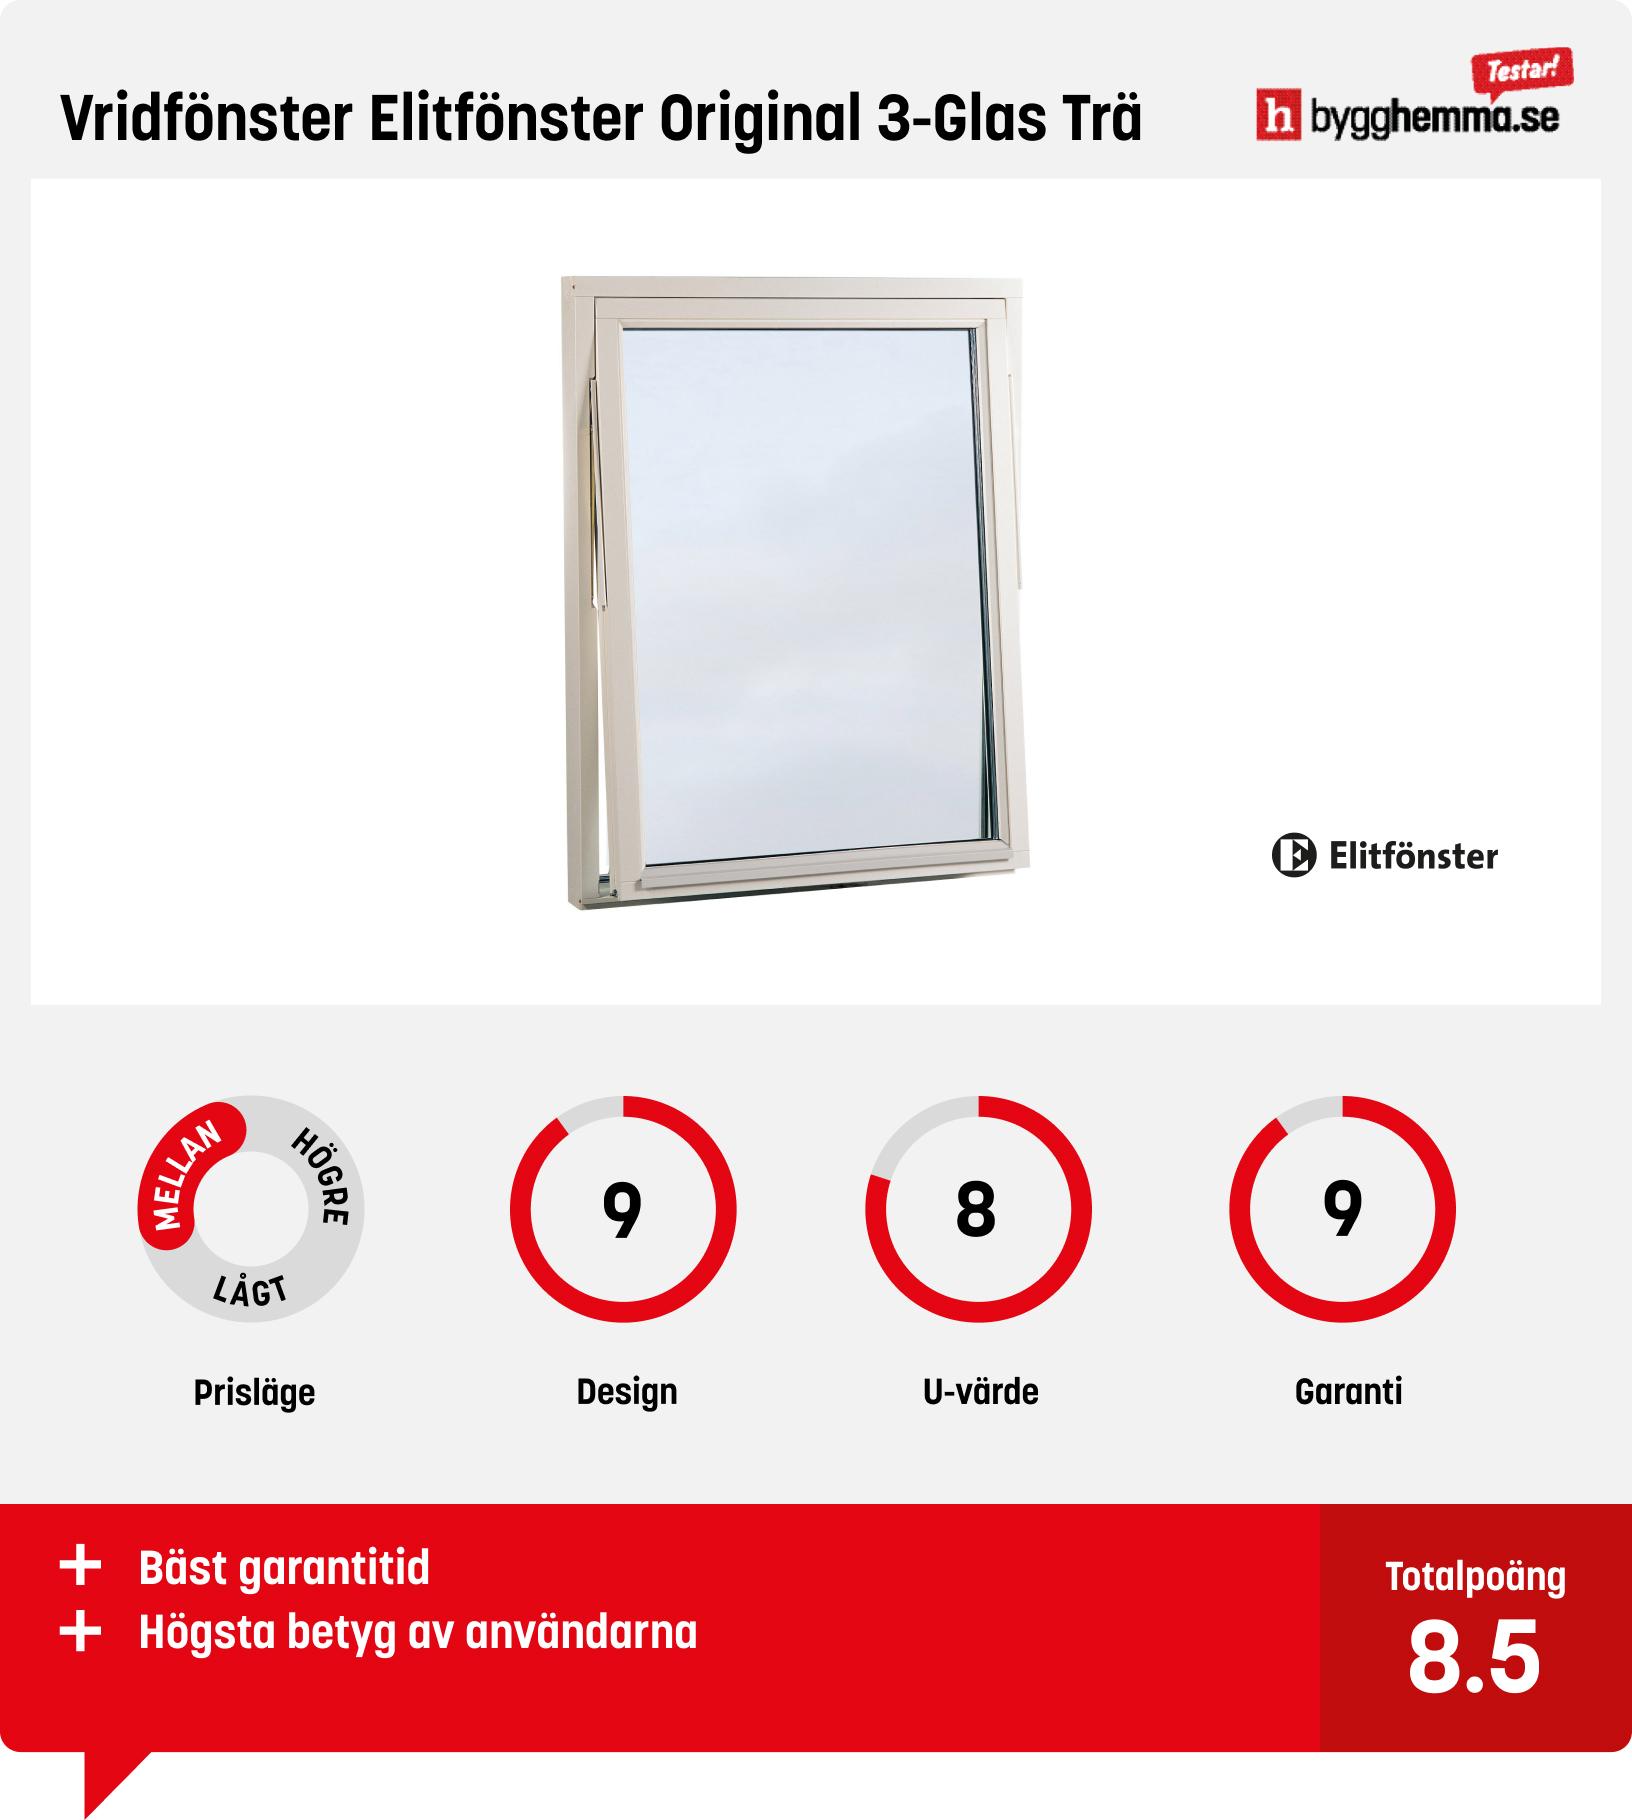 Fönster bäst i test - Vridfönster Elitfönster Original 3-Glas Trä